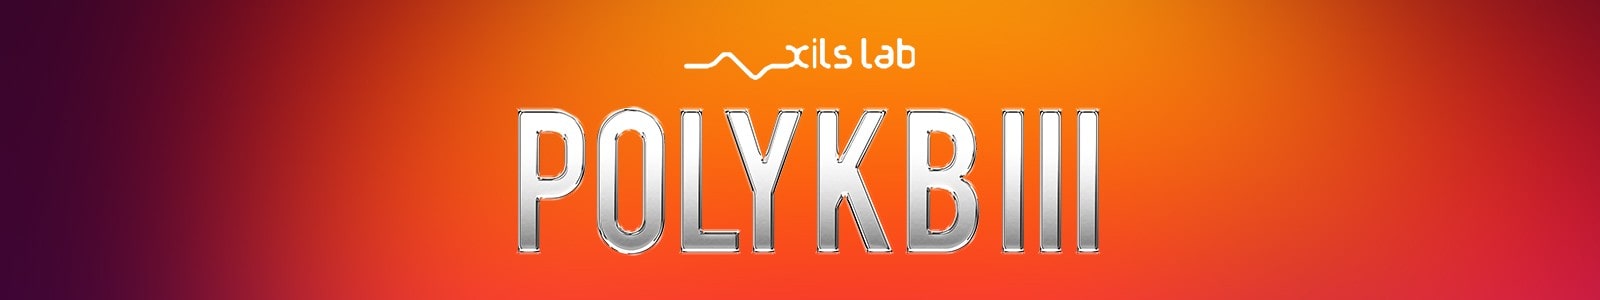 PolyKB III by XILS-Lab